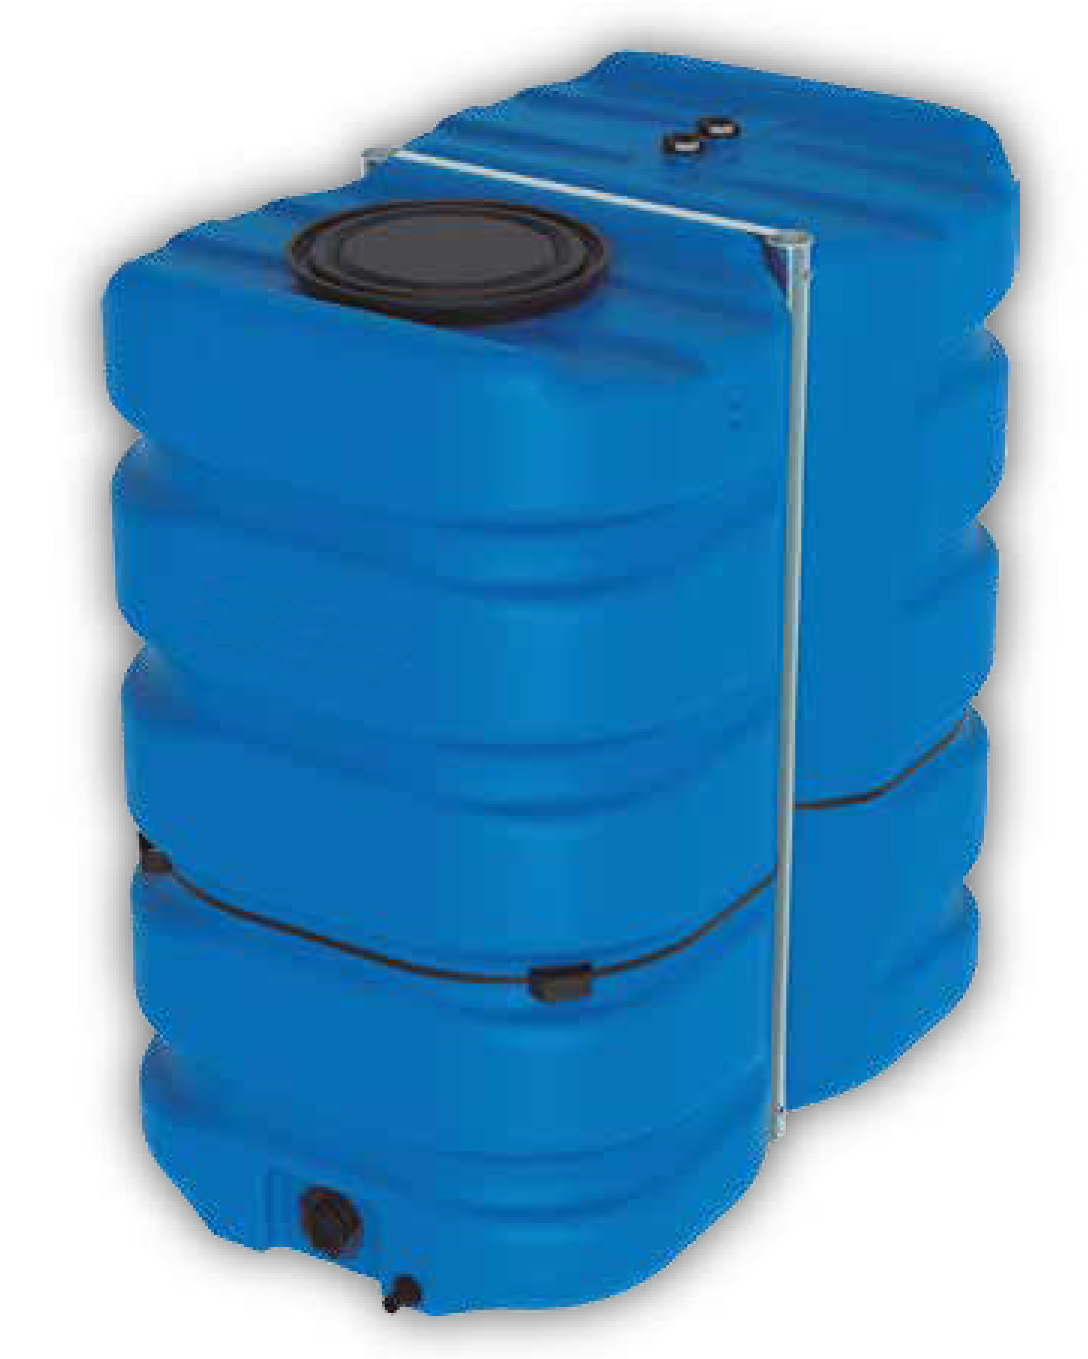 Réservoir récupérateur d'eau de pluie 3000l - Réservoir aérien bleu en  polyéthylène - Vertical